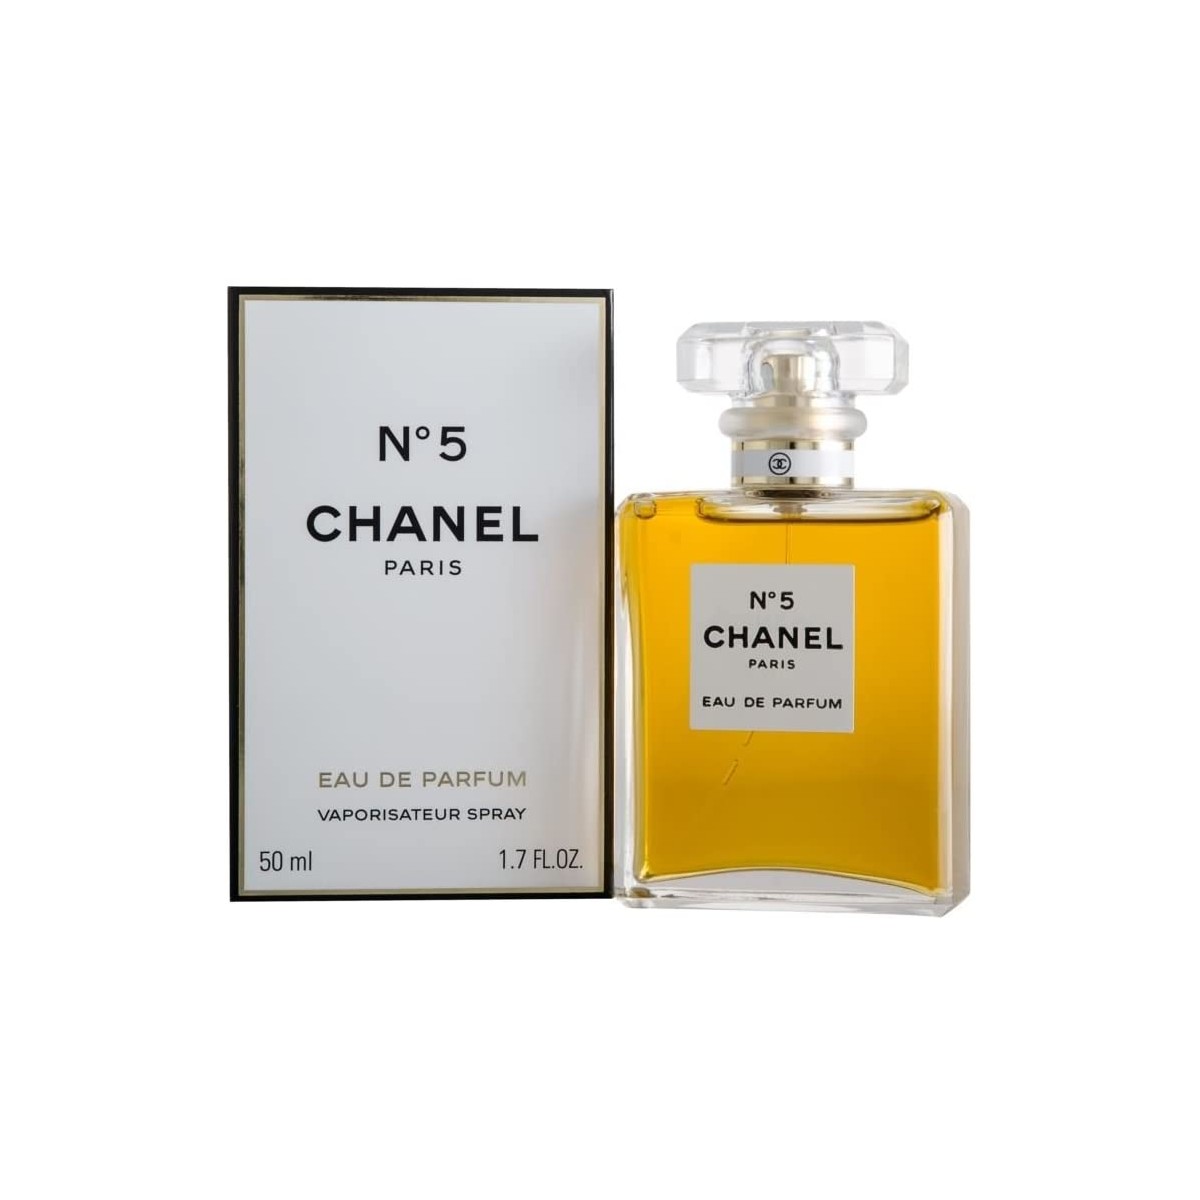 Profumo Chanel, N. 5 con vaporizzatore, 50 ml, idea regalo